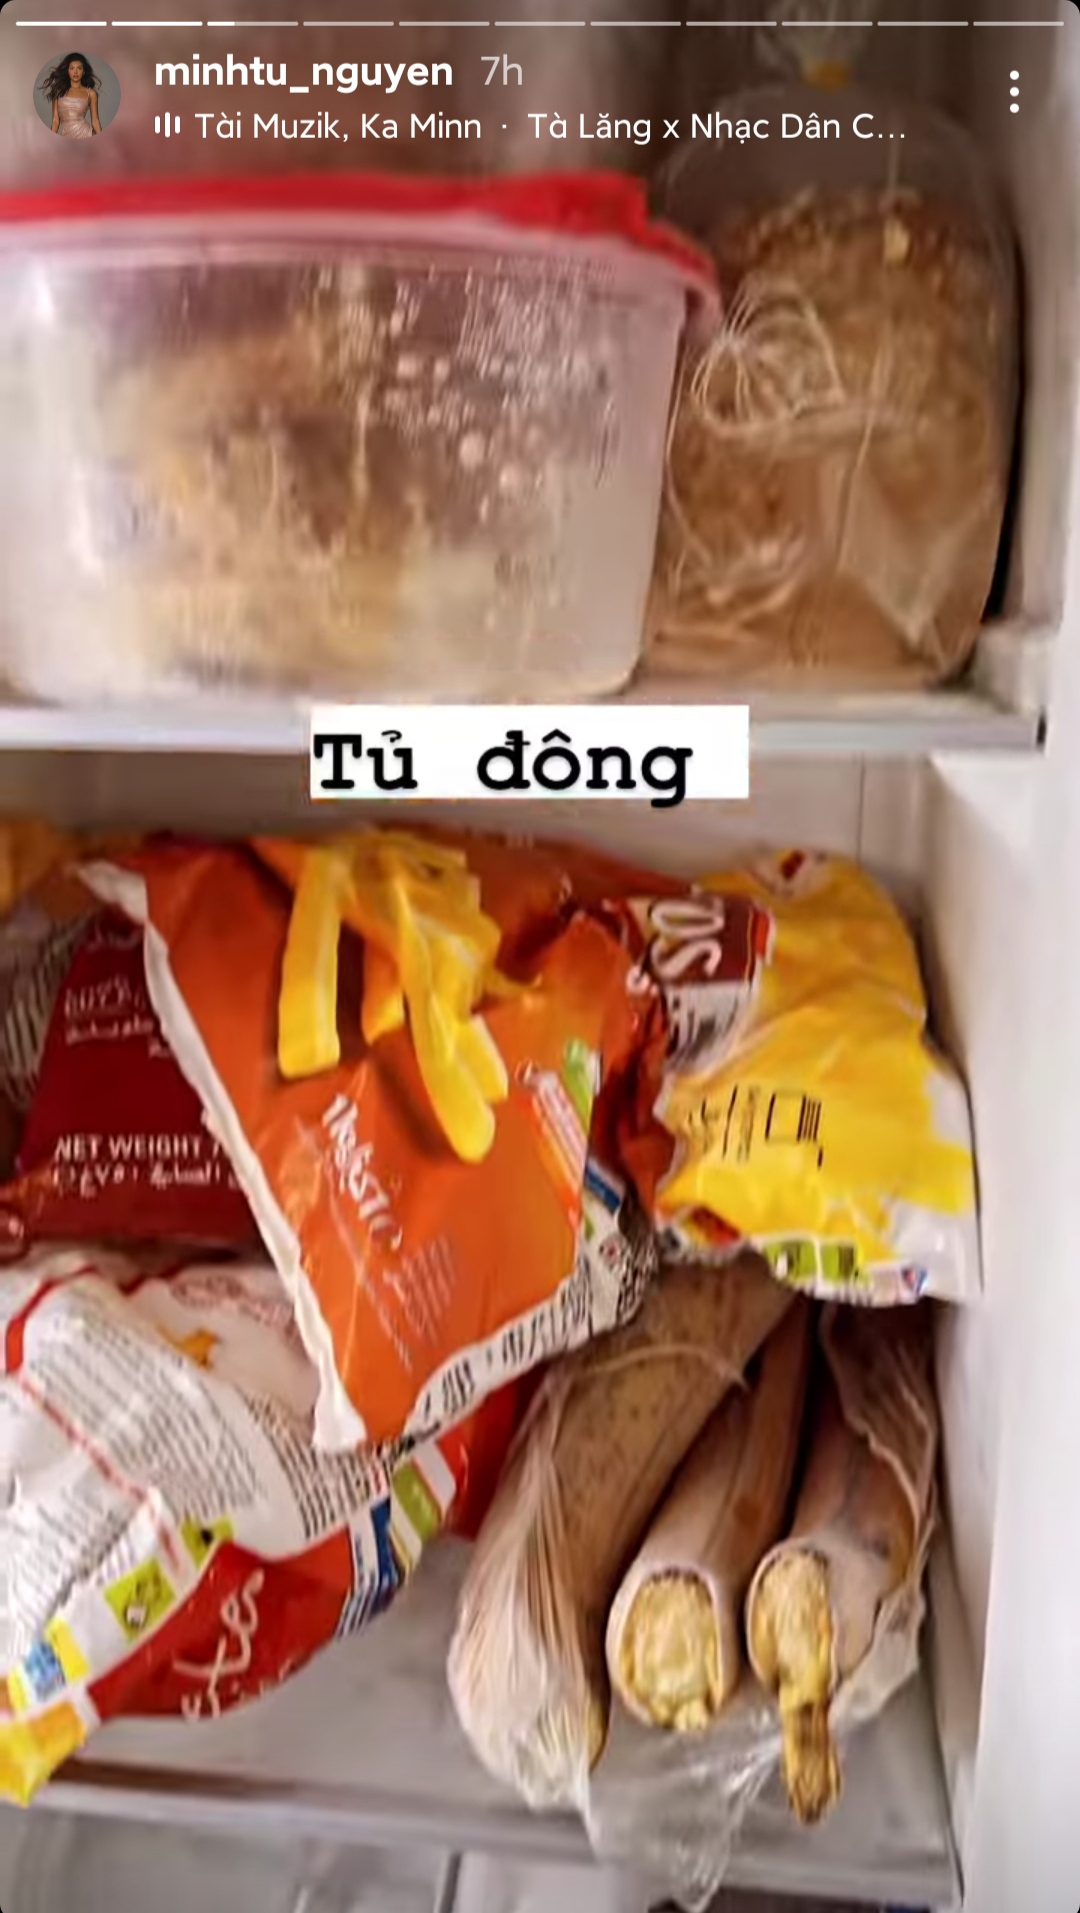 tủ lạnh của Minh Tú trong mùa dịch